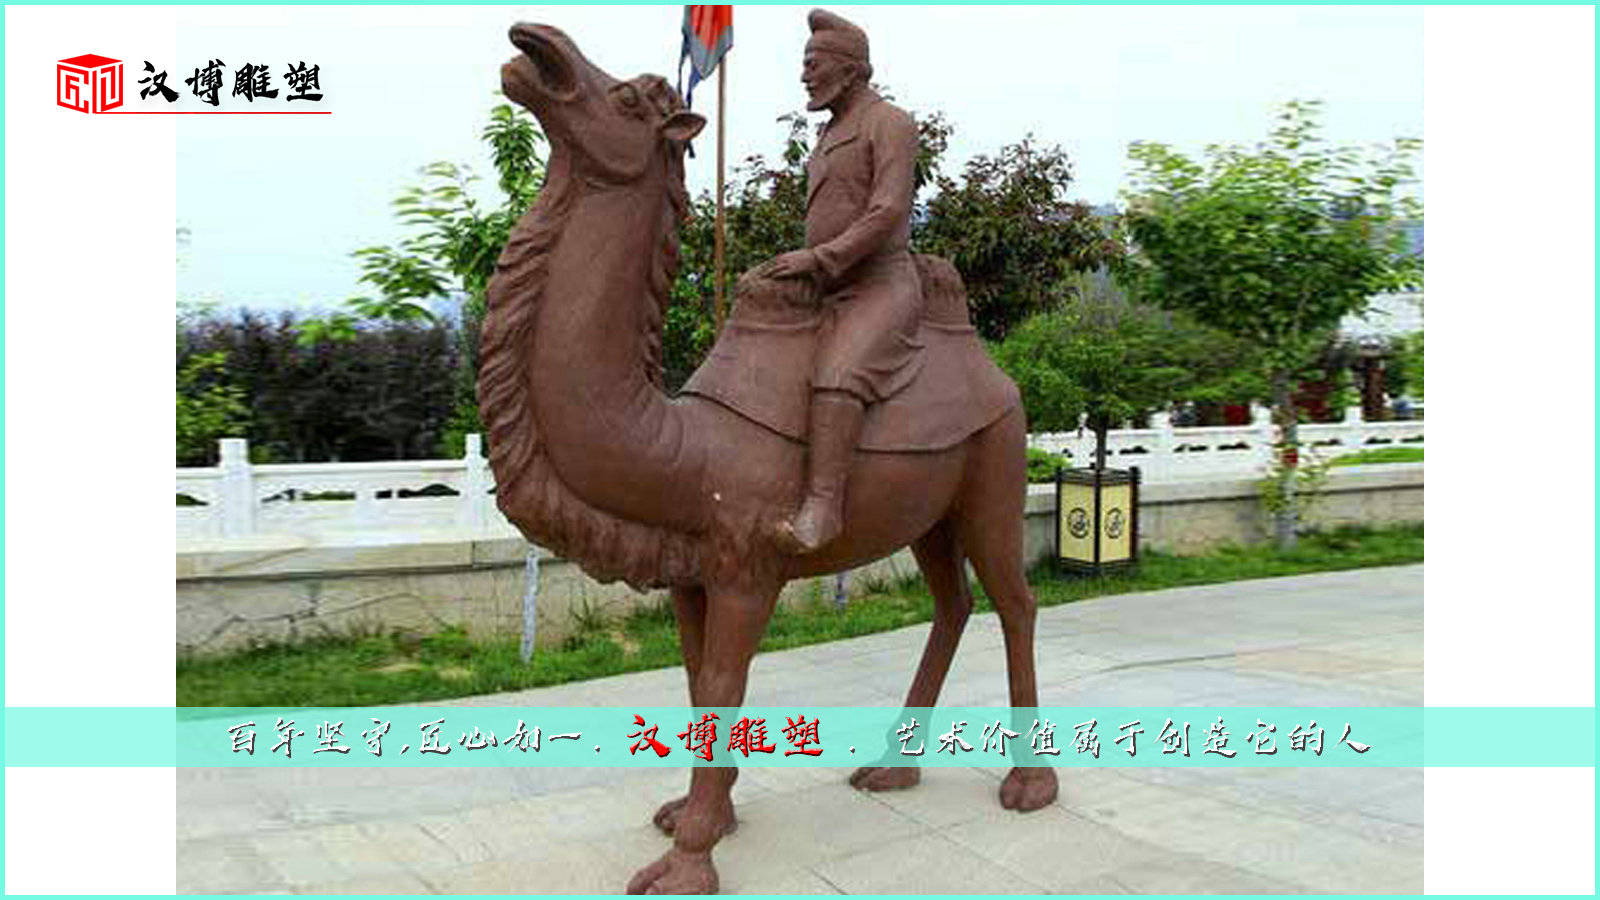 欣赏骆驼主题雕塑的风采